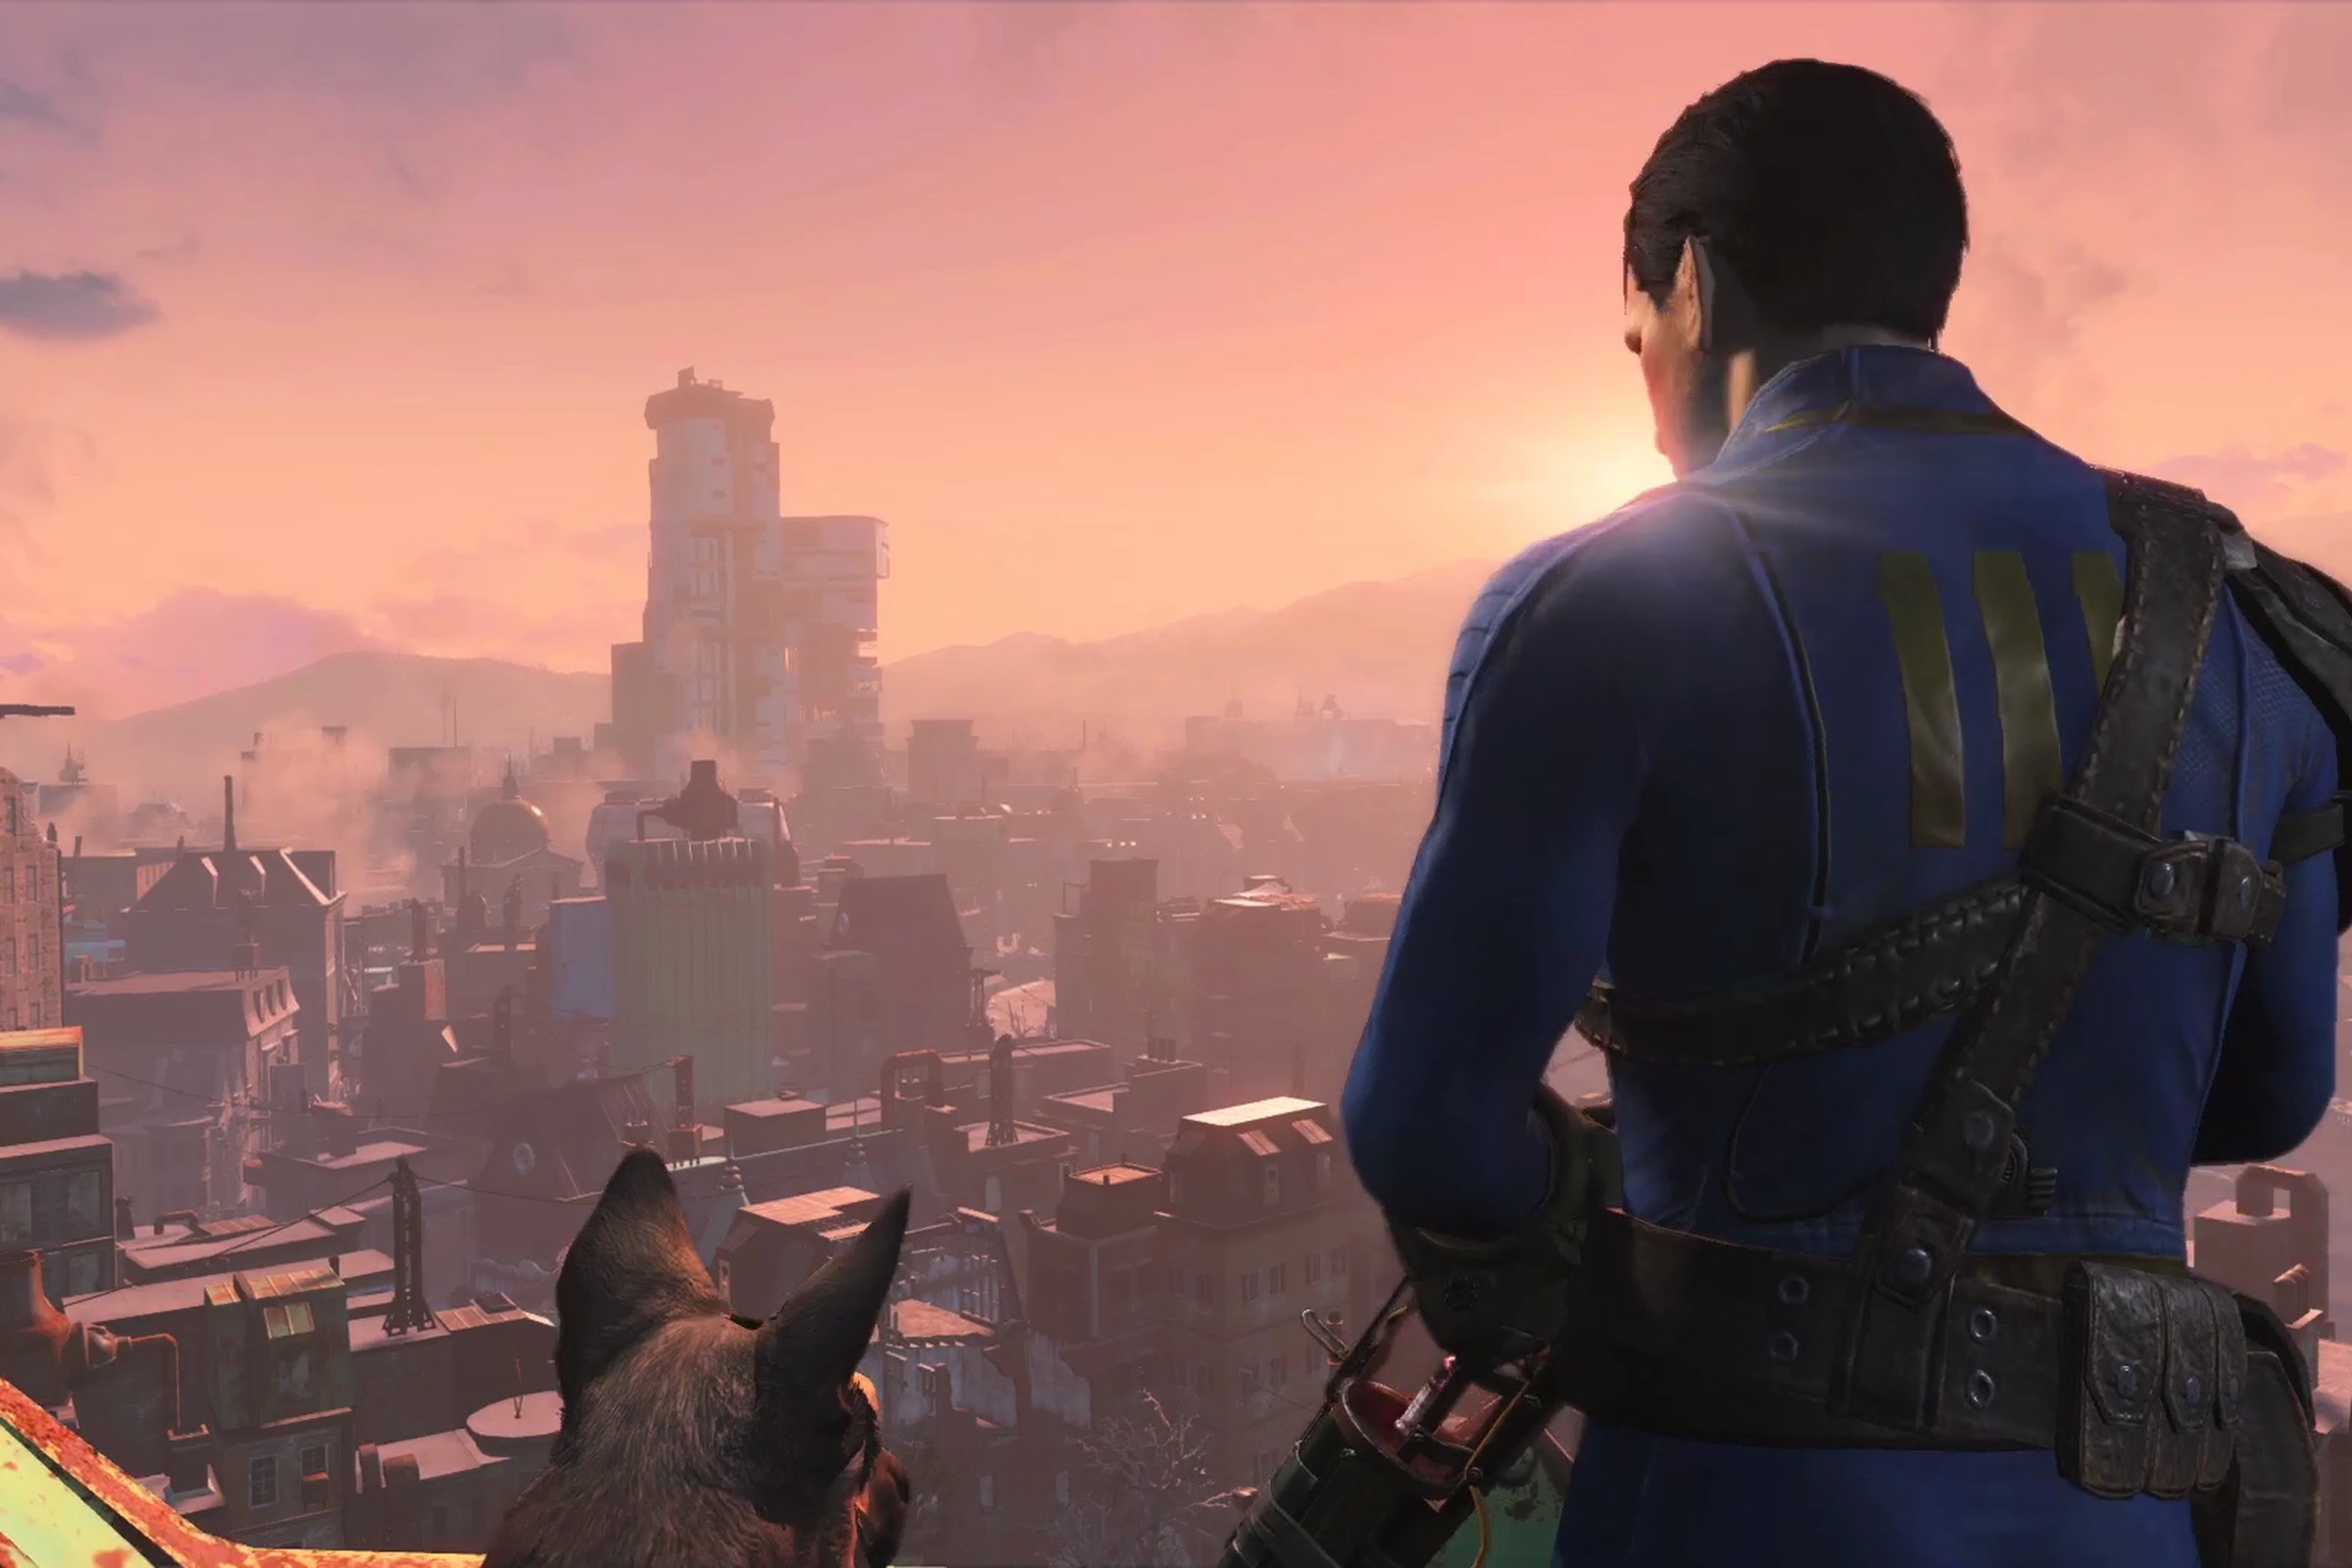 Fallout 4 screenshots